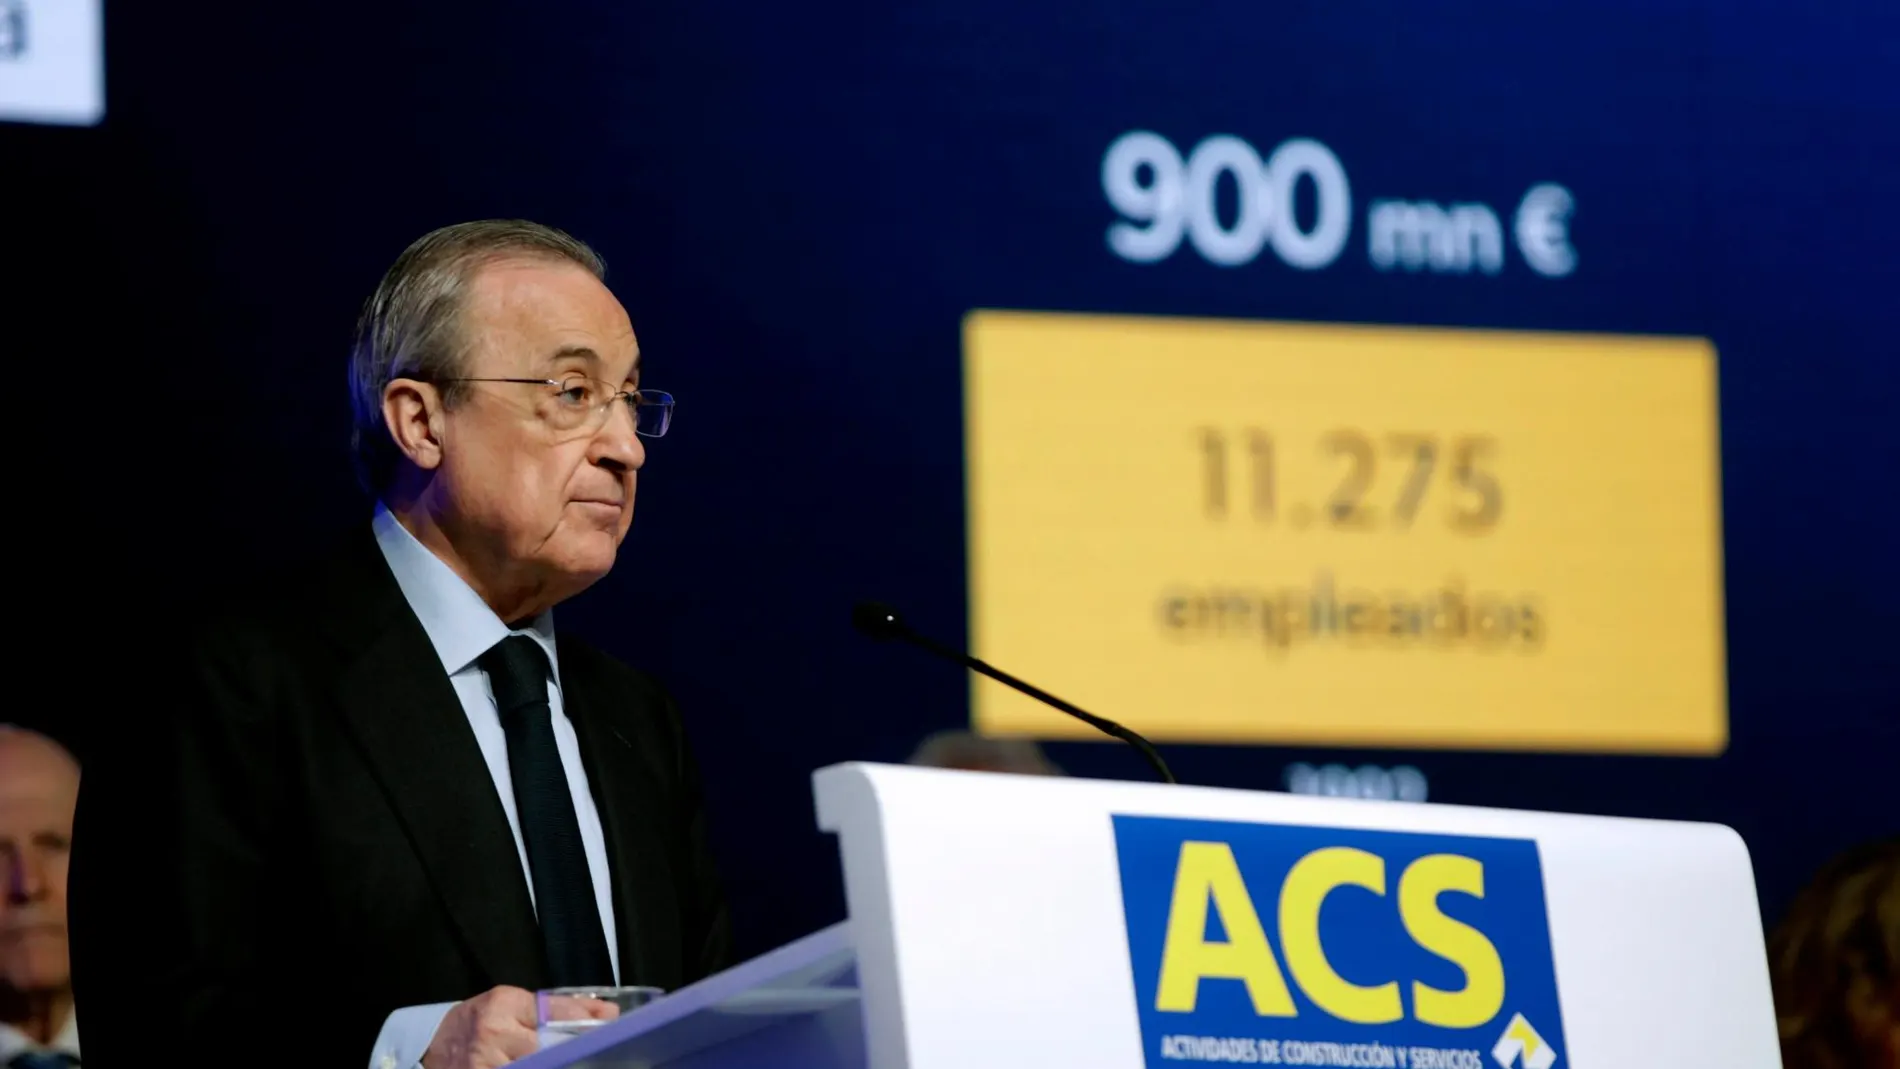 El presidente de ACS, Florentino Pérez, durante su intervención en la junta de accionistas de la compañía el pasado mes de mayo /EFE